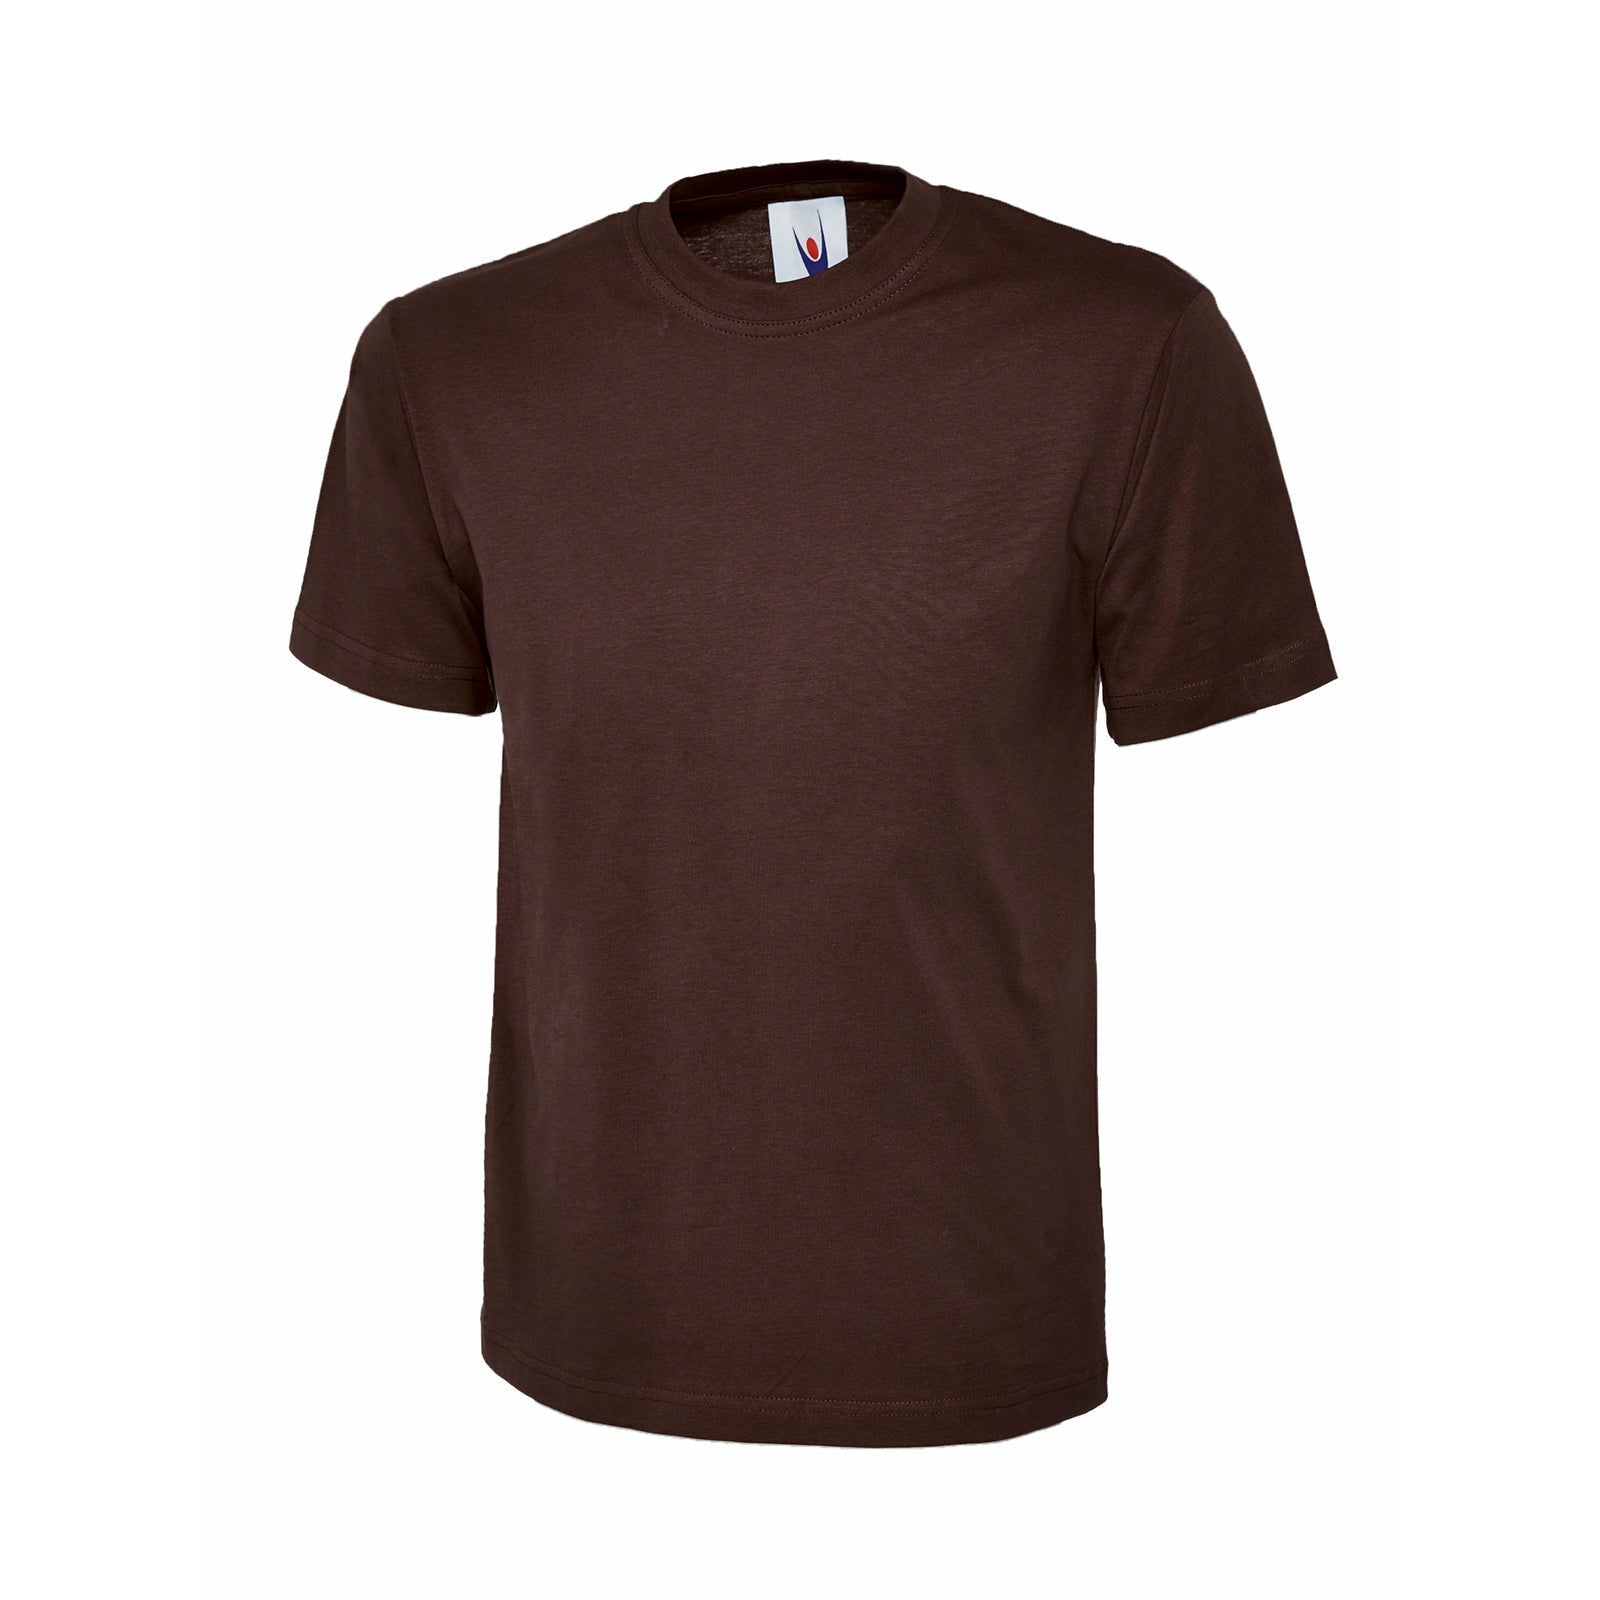 Personalised Custom T-Shirt - Brown